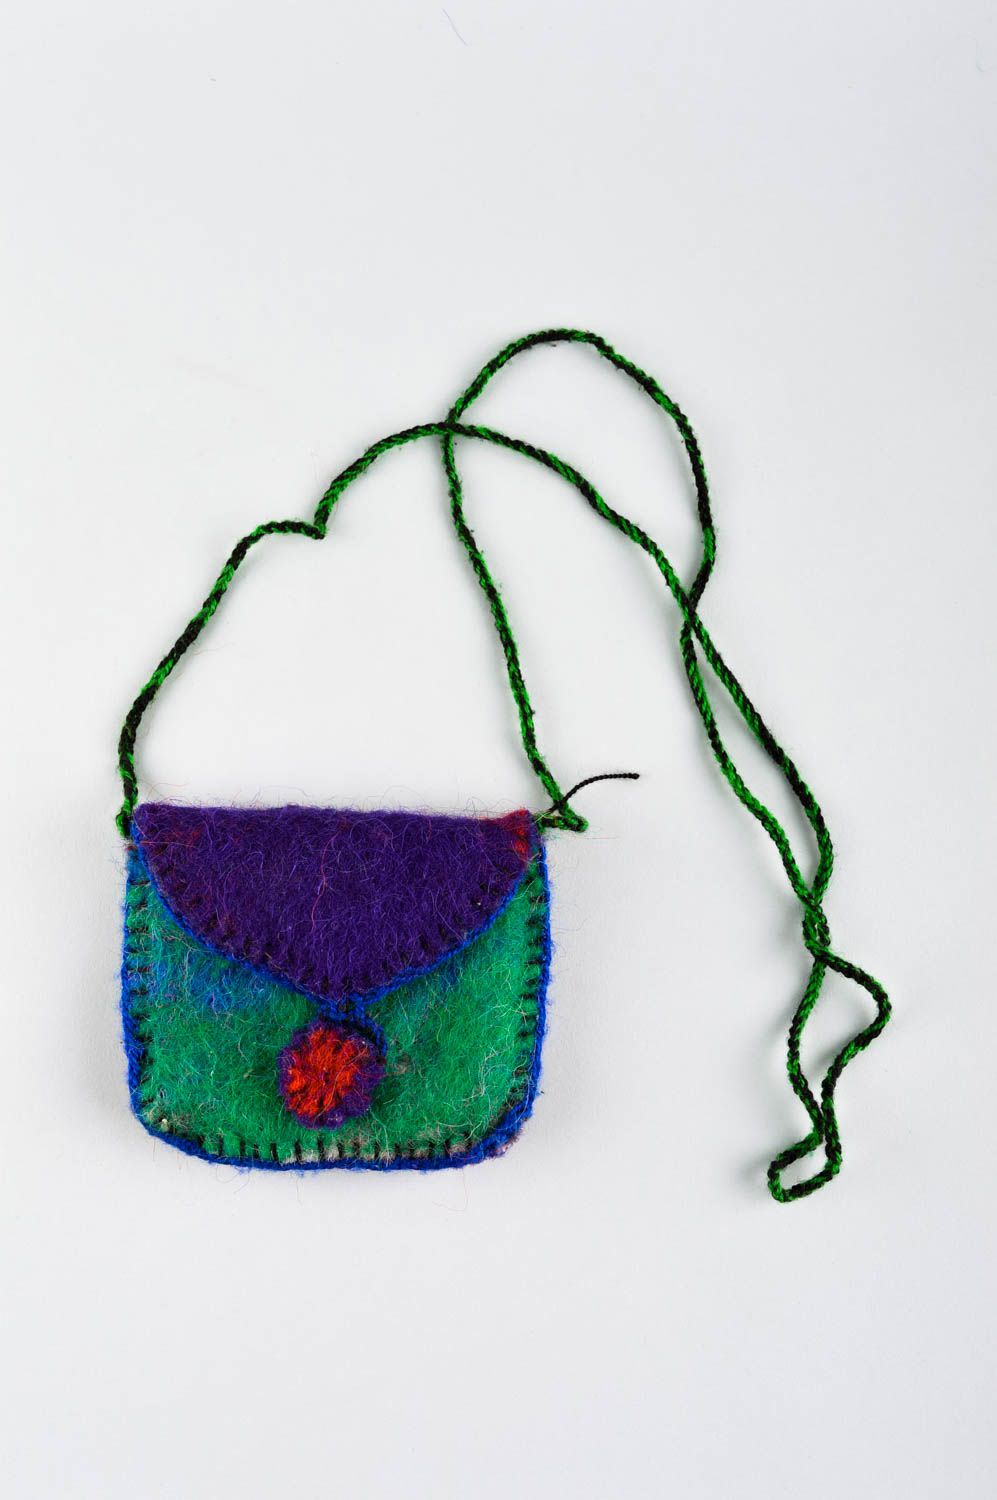 Handmade bag designer handbag unusual bag for girls gift ideas knitted bag photo 2